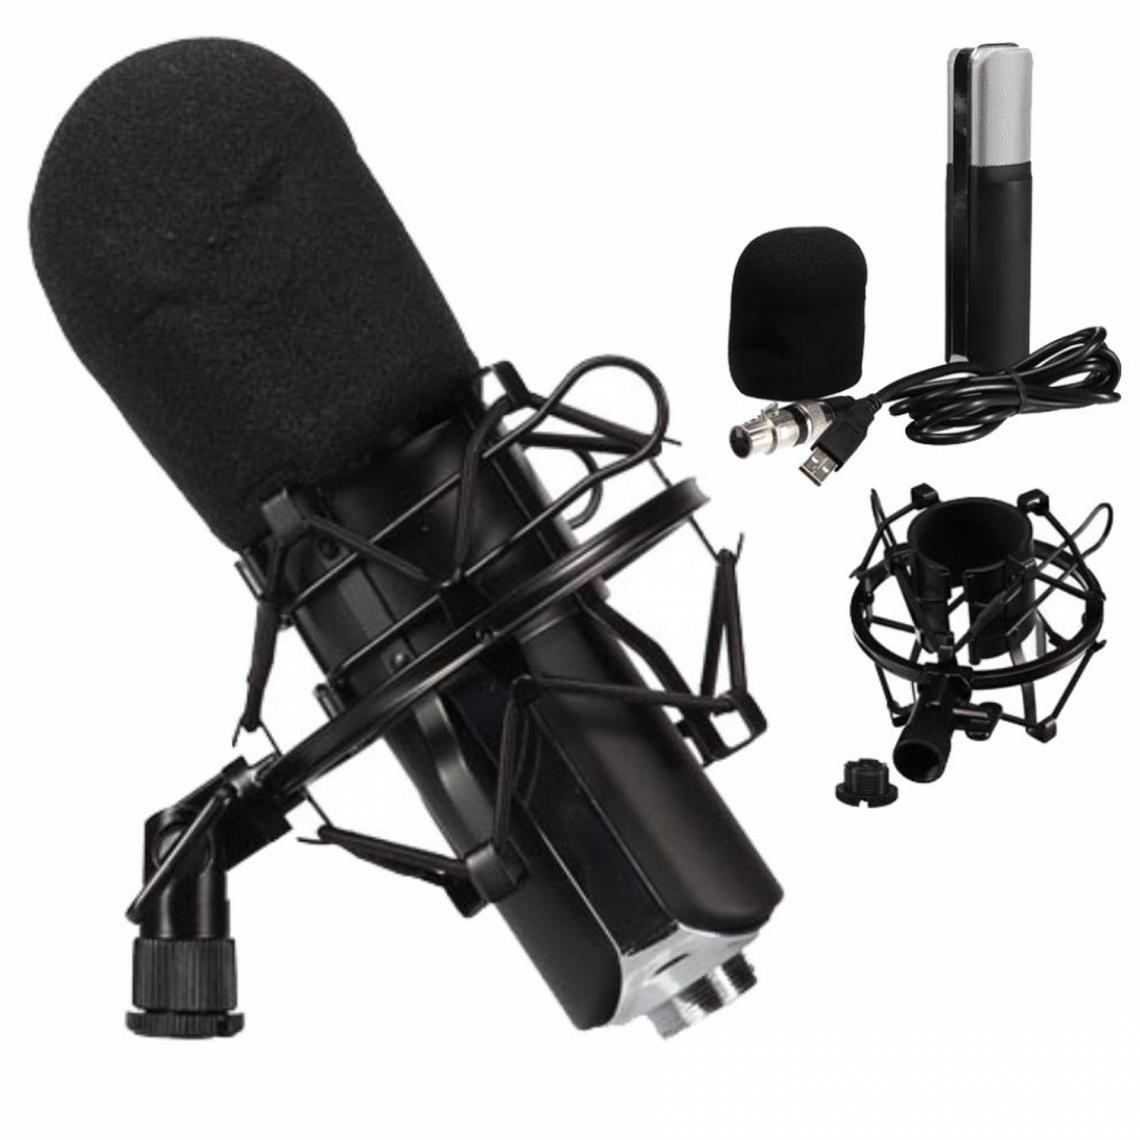 Velleman - Kit avec microphone à condensateur pour Gamer, Vlogger ou auteur-compositeur - Accessoires DJ